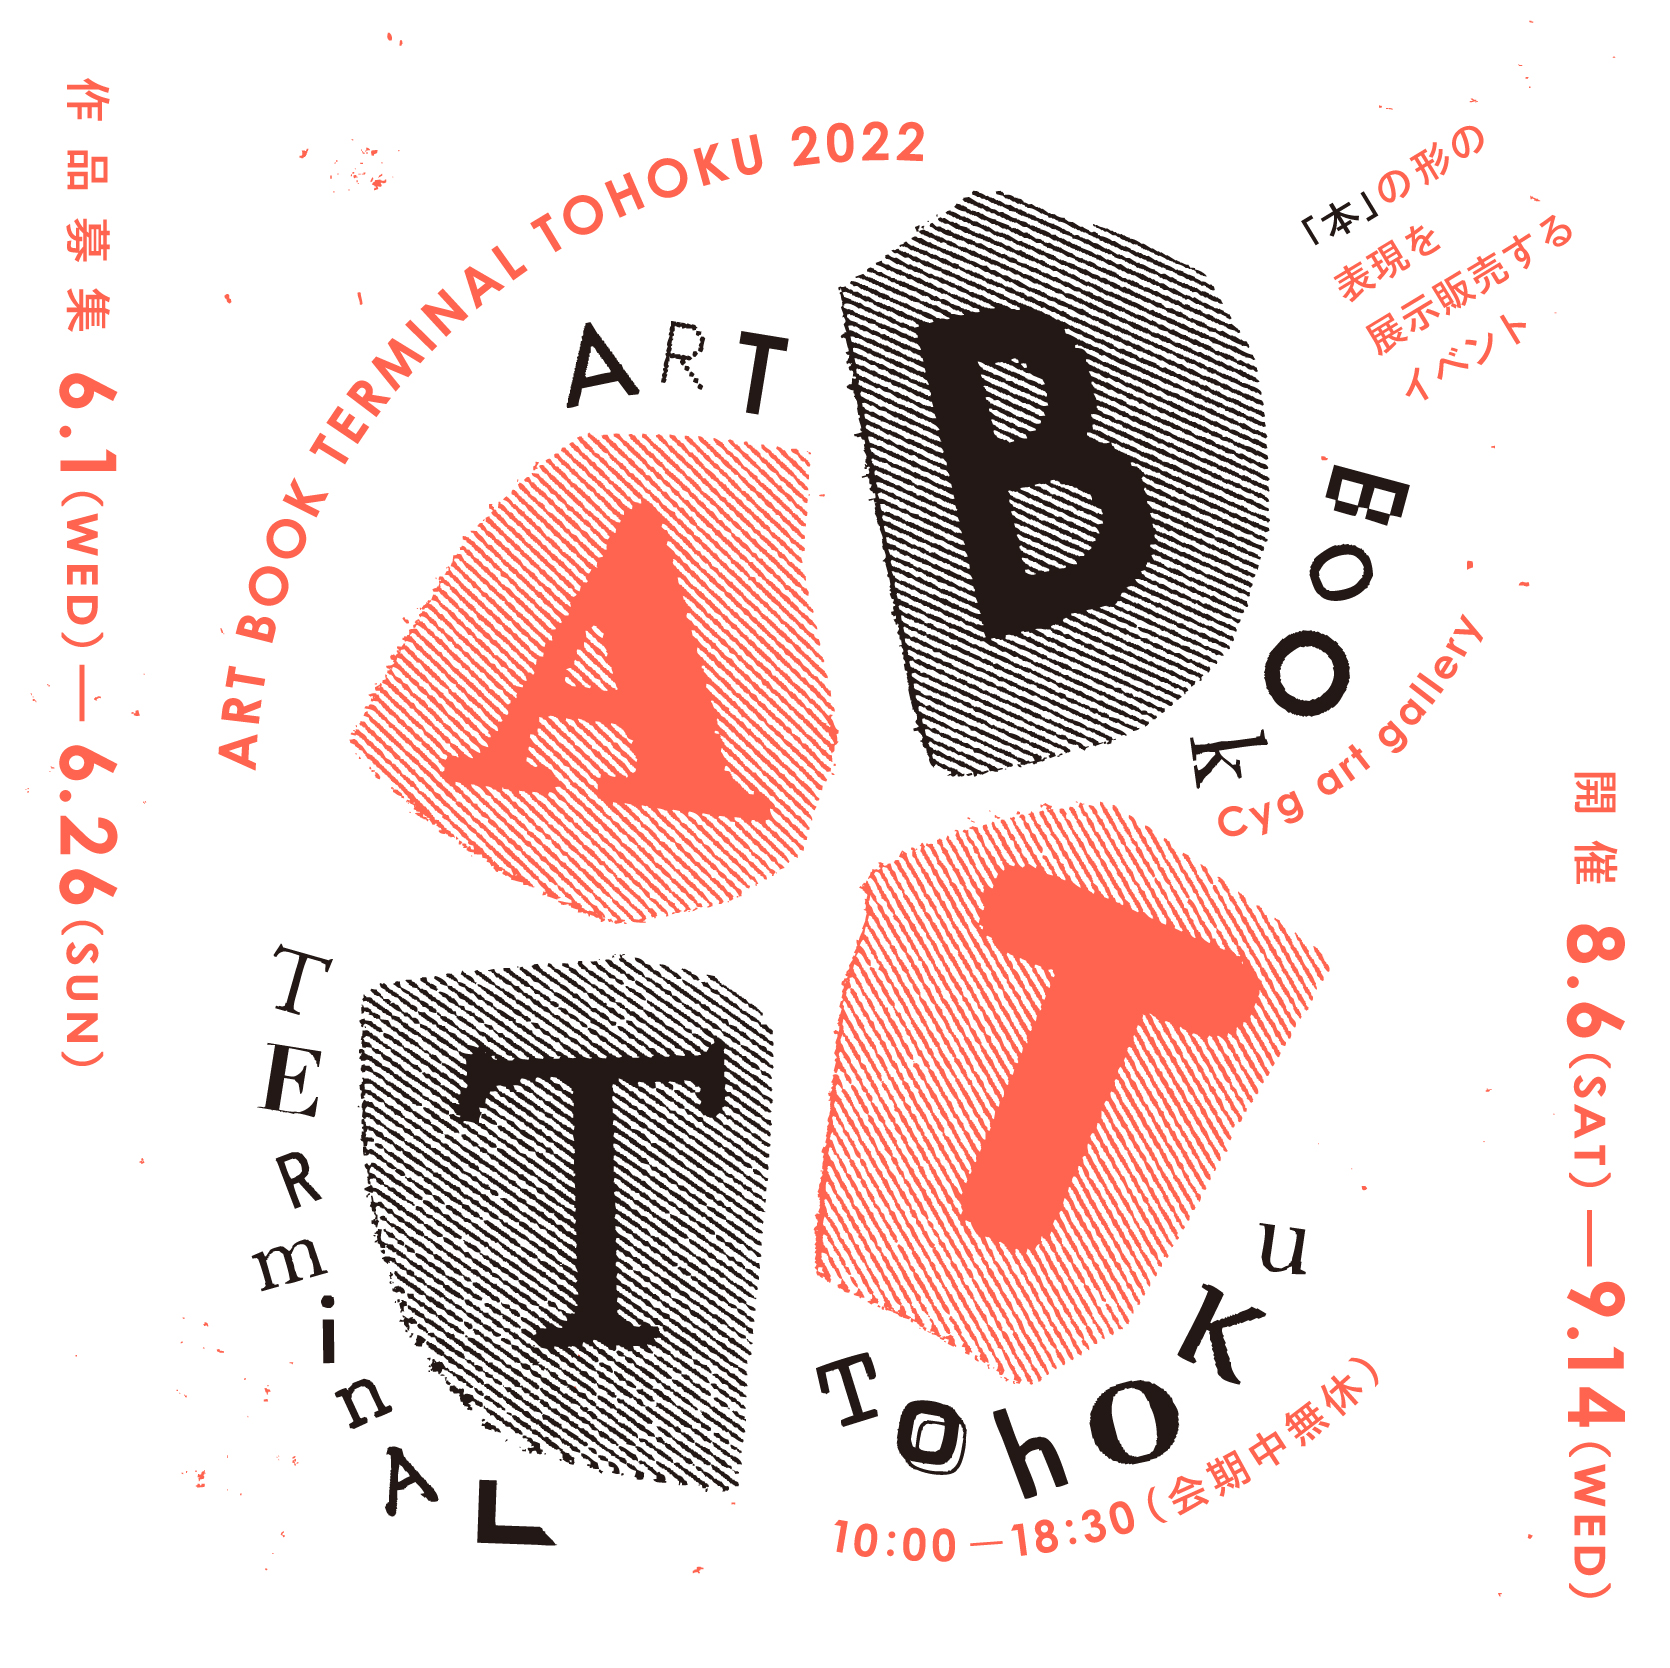 ART BOOK TERMINAL TOHOKU 2022